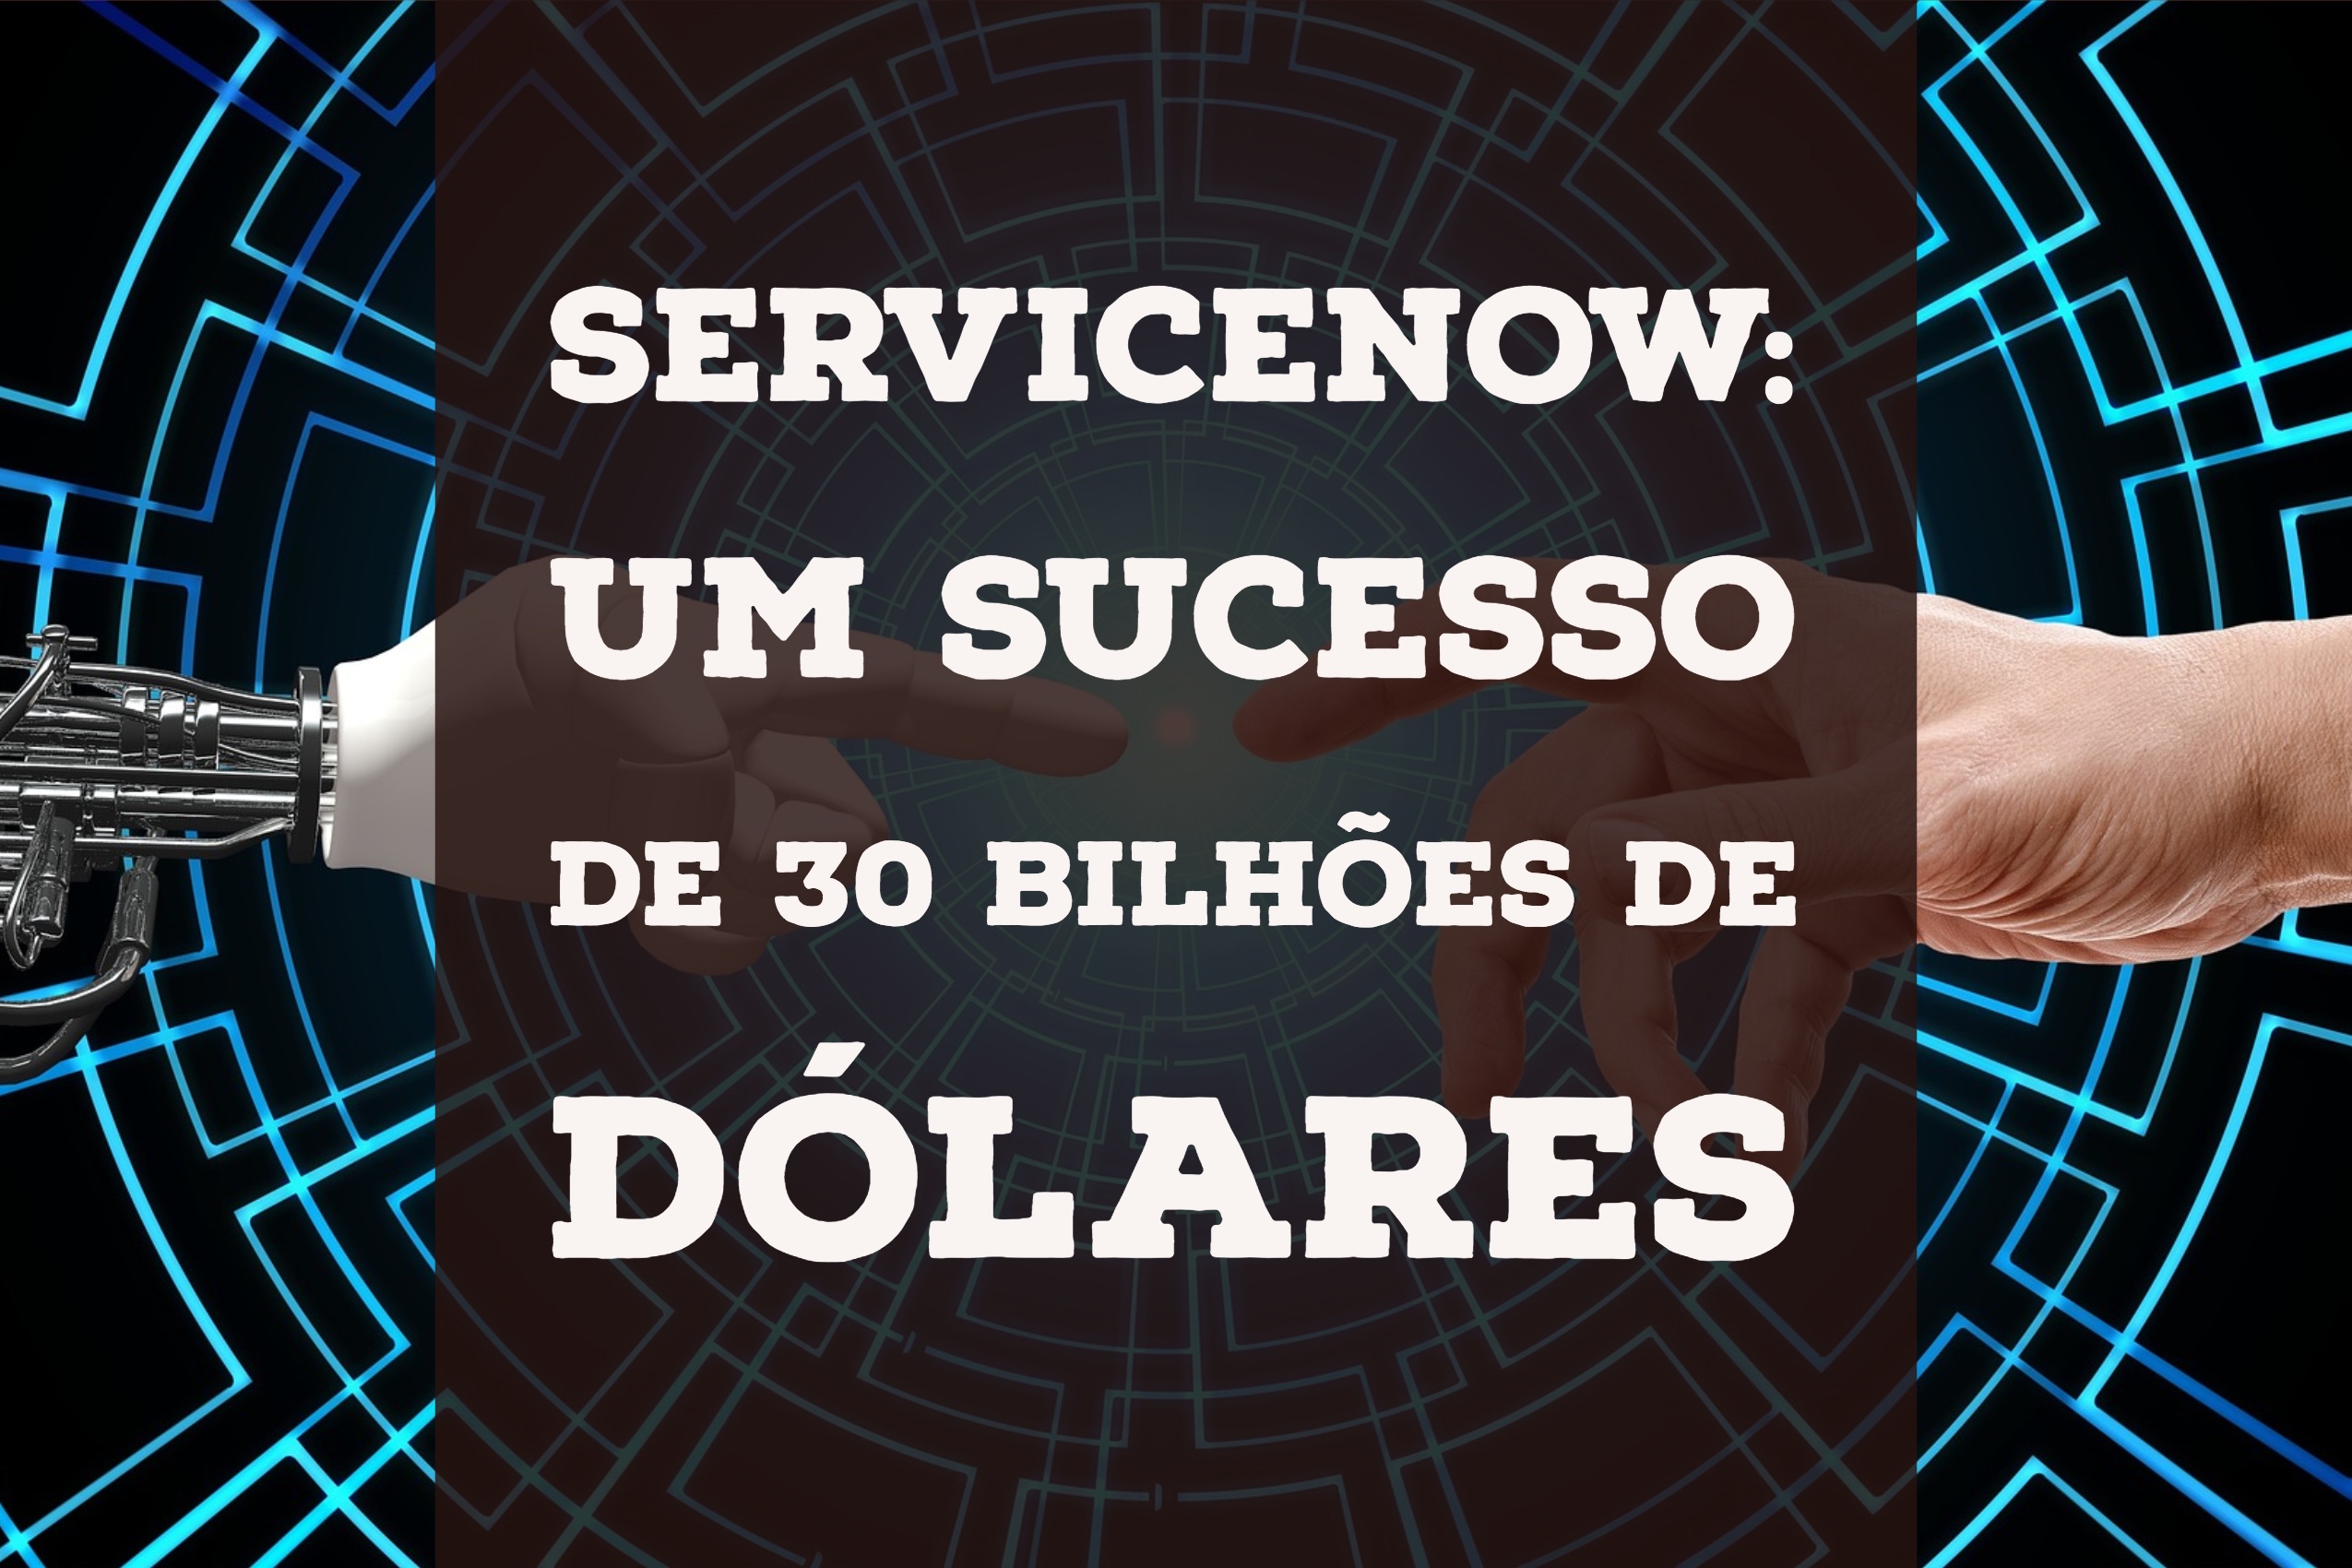 ServiceNow: um sucesso de 30 bilhões de dólares